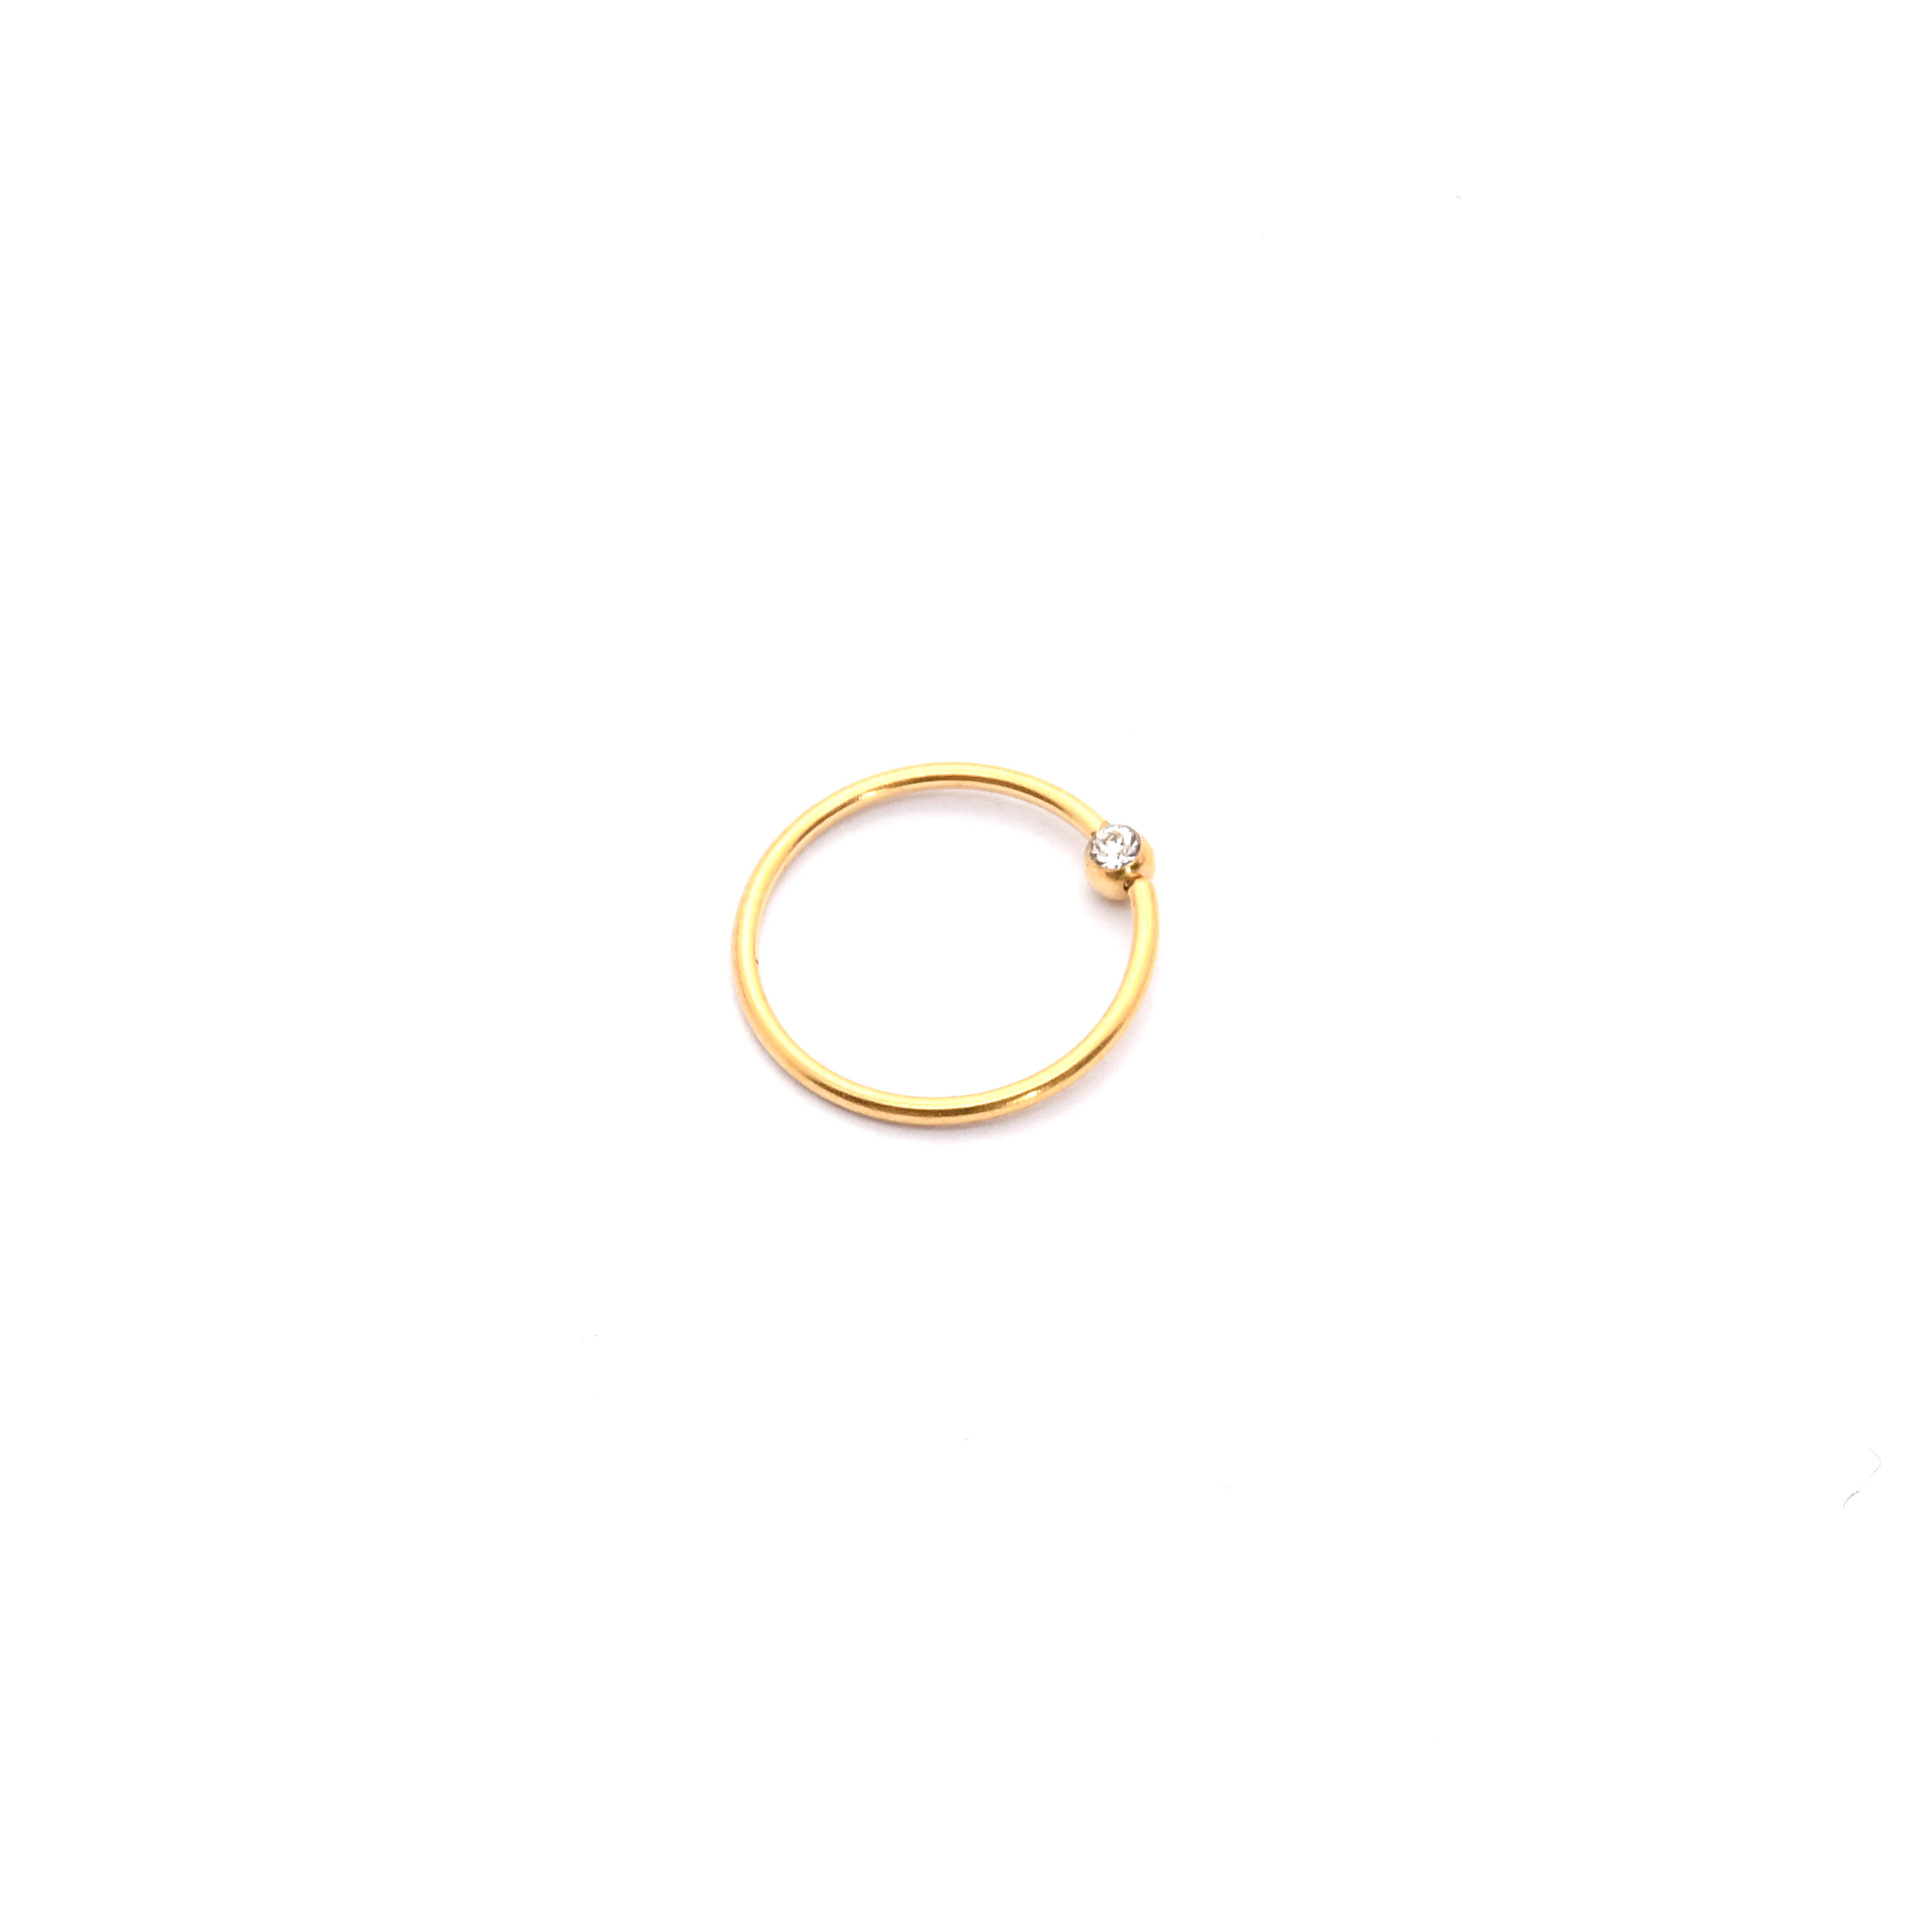 Gold inner diameter 8mm